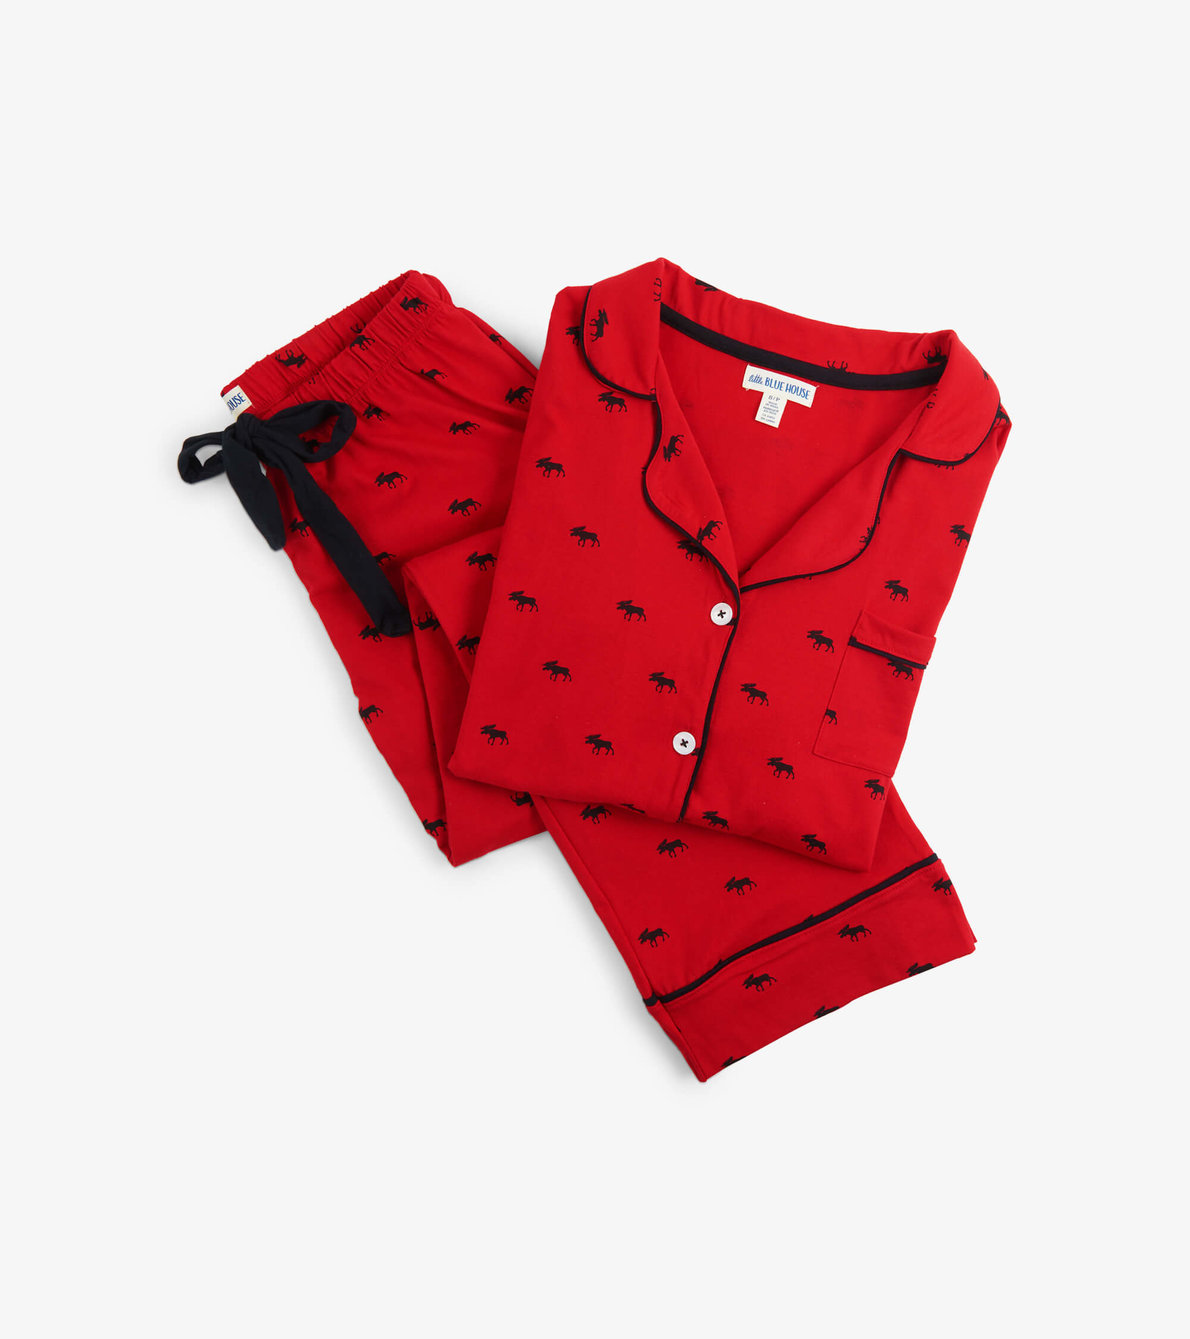 View larger image of Moose On Red Women's Pajama Set